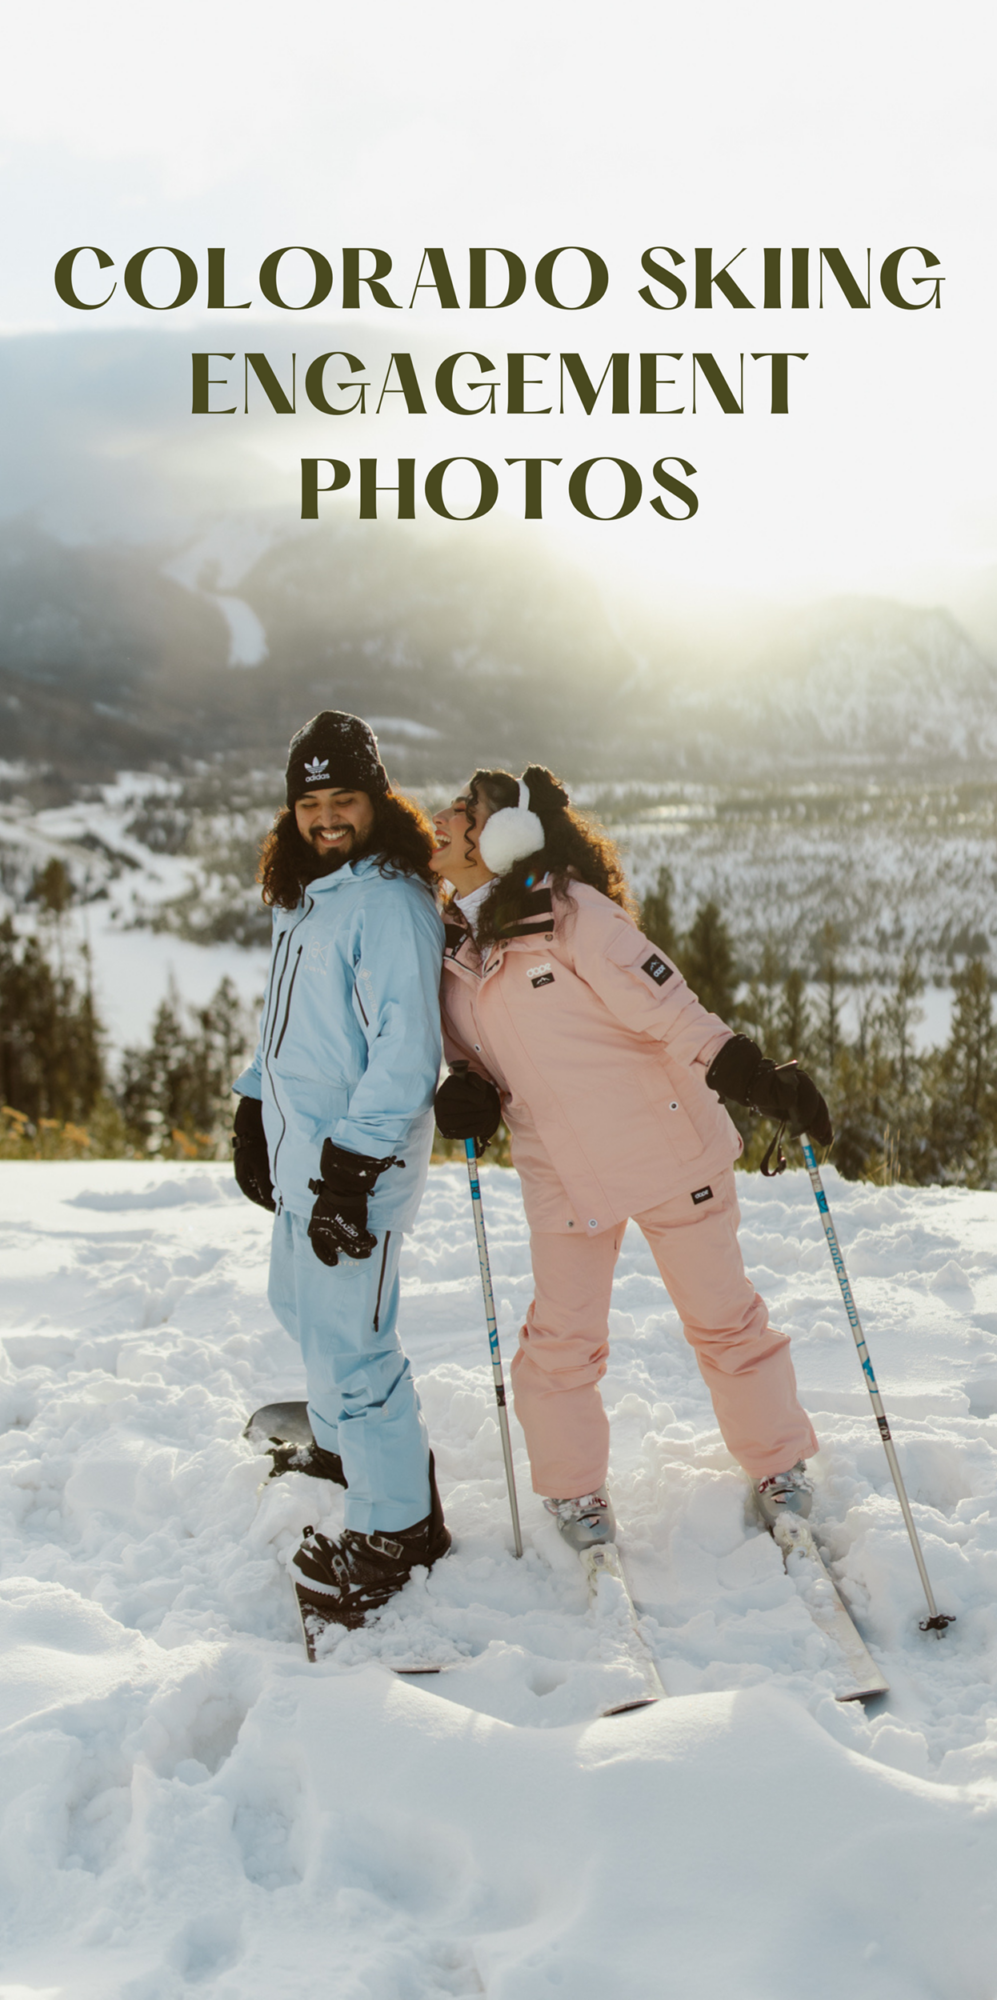 Colorado Skiing Engagement Photos | Becca Cannon